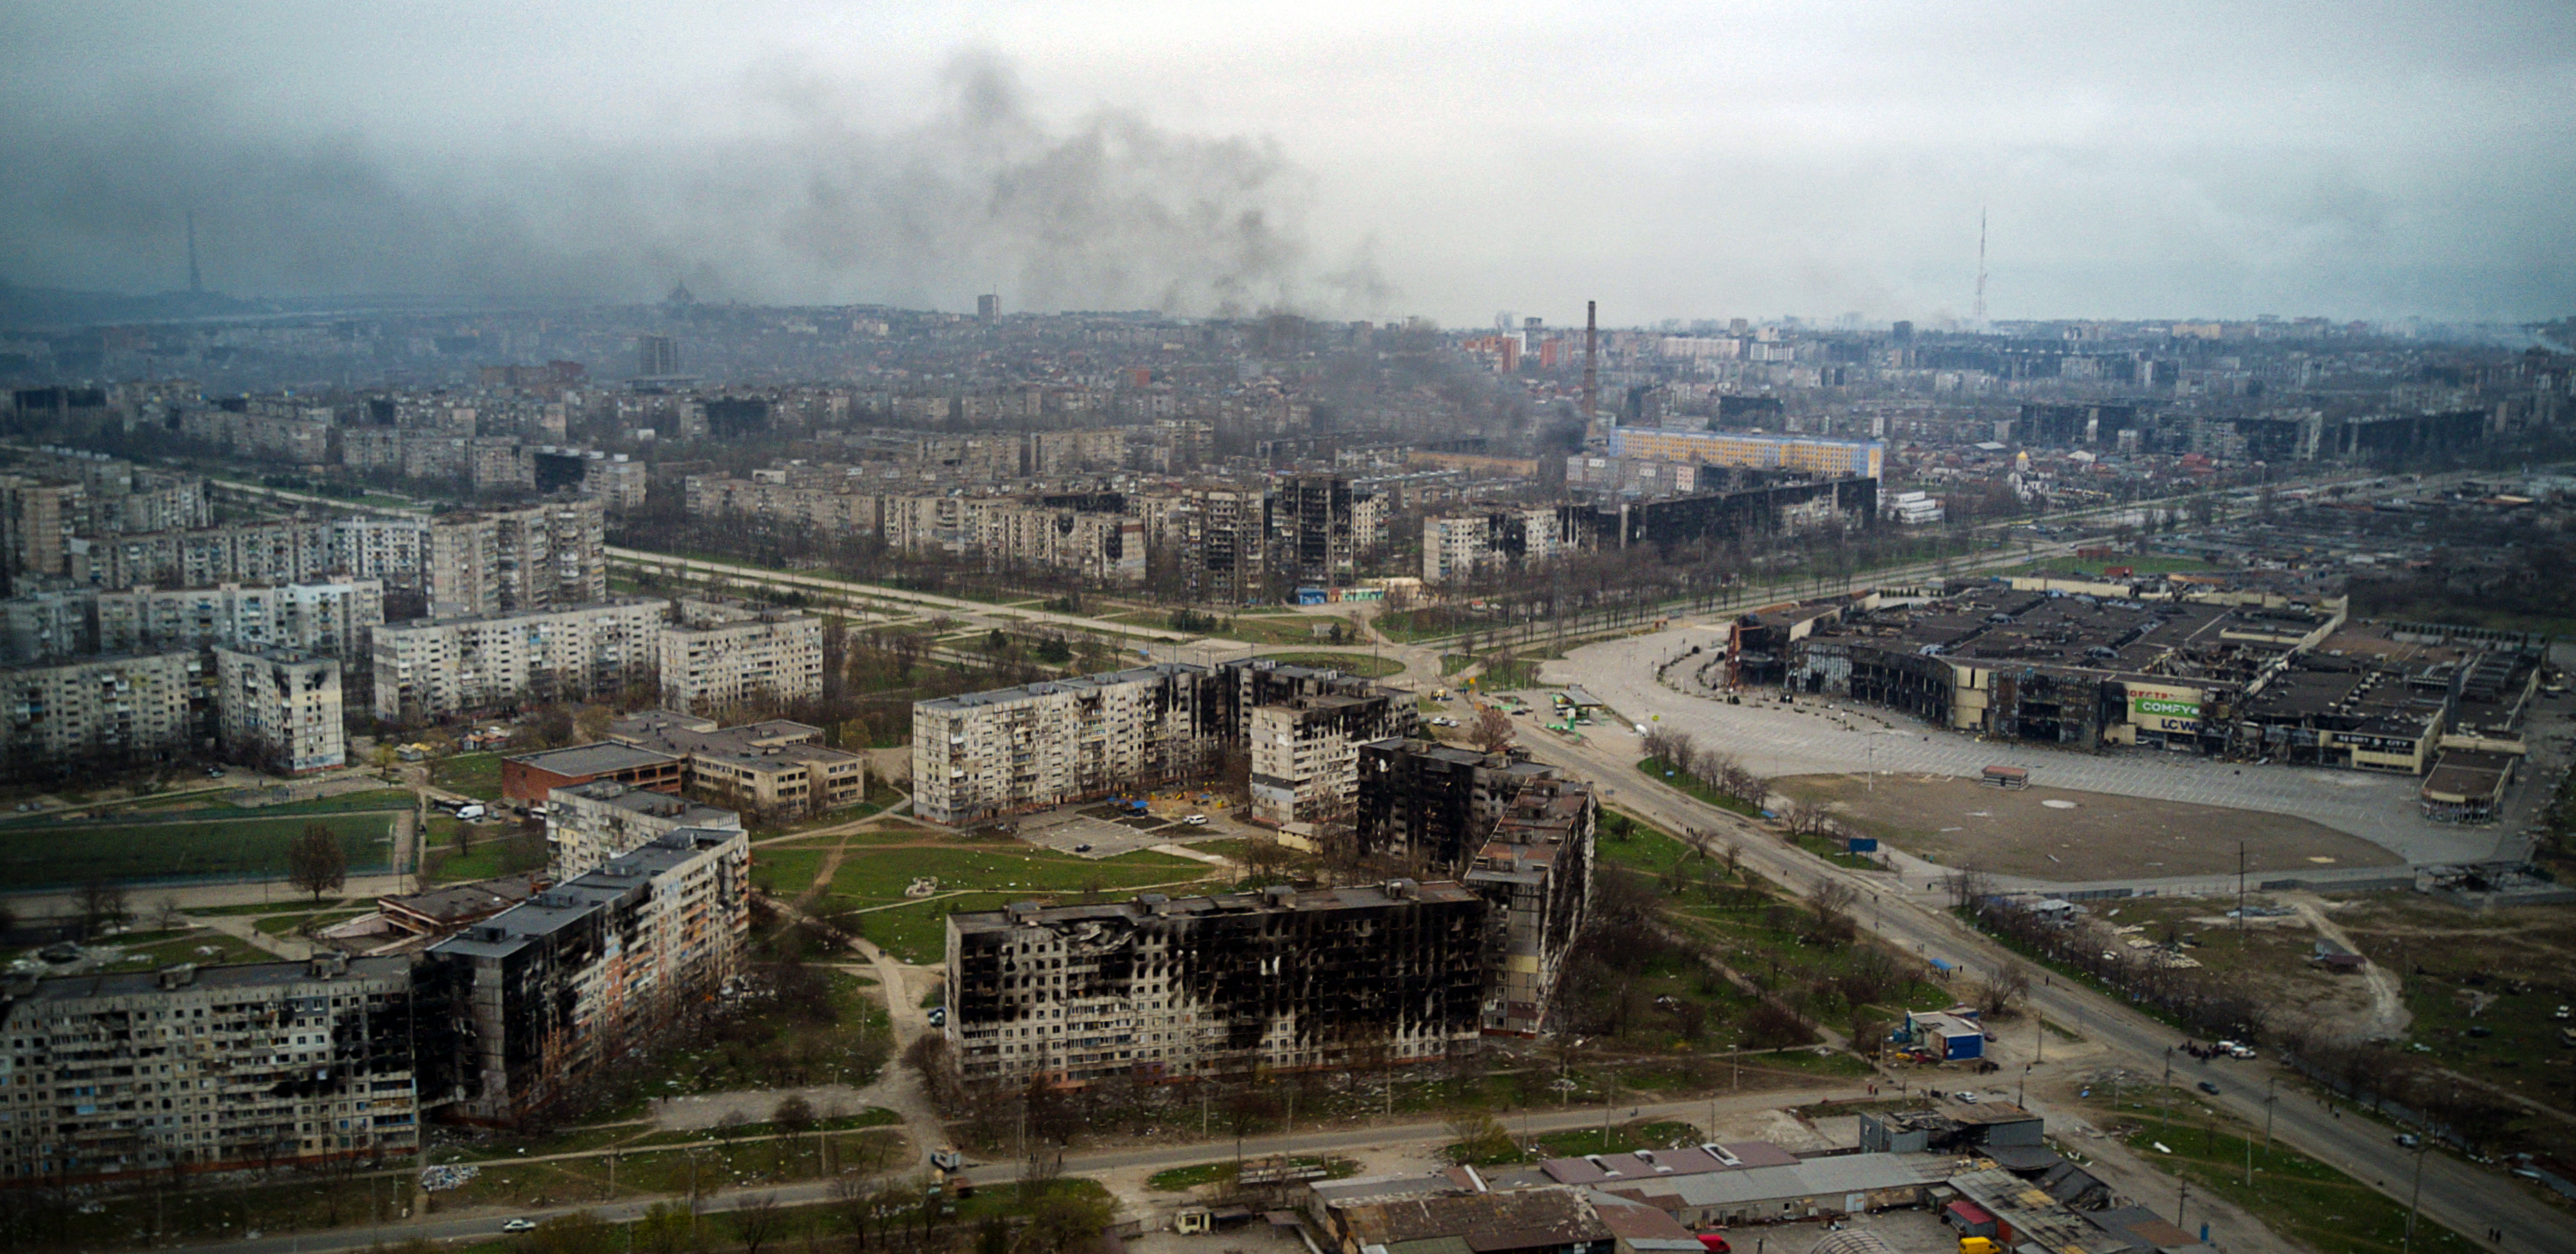 Una vista aérea tomada el 12 de abril de 2022 muestra la ciudad de Mariupol, durante la invasión militar de Rusia lanzada contra Ucrania. (Andrey BORODULIN / AFP)